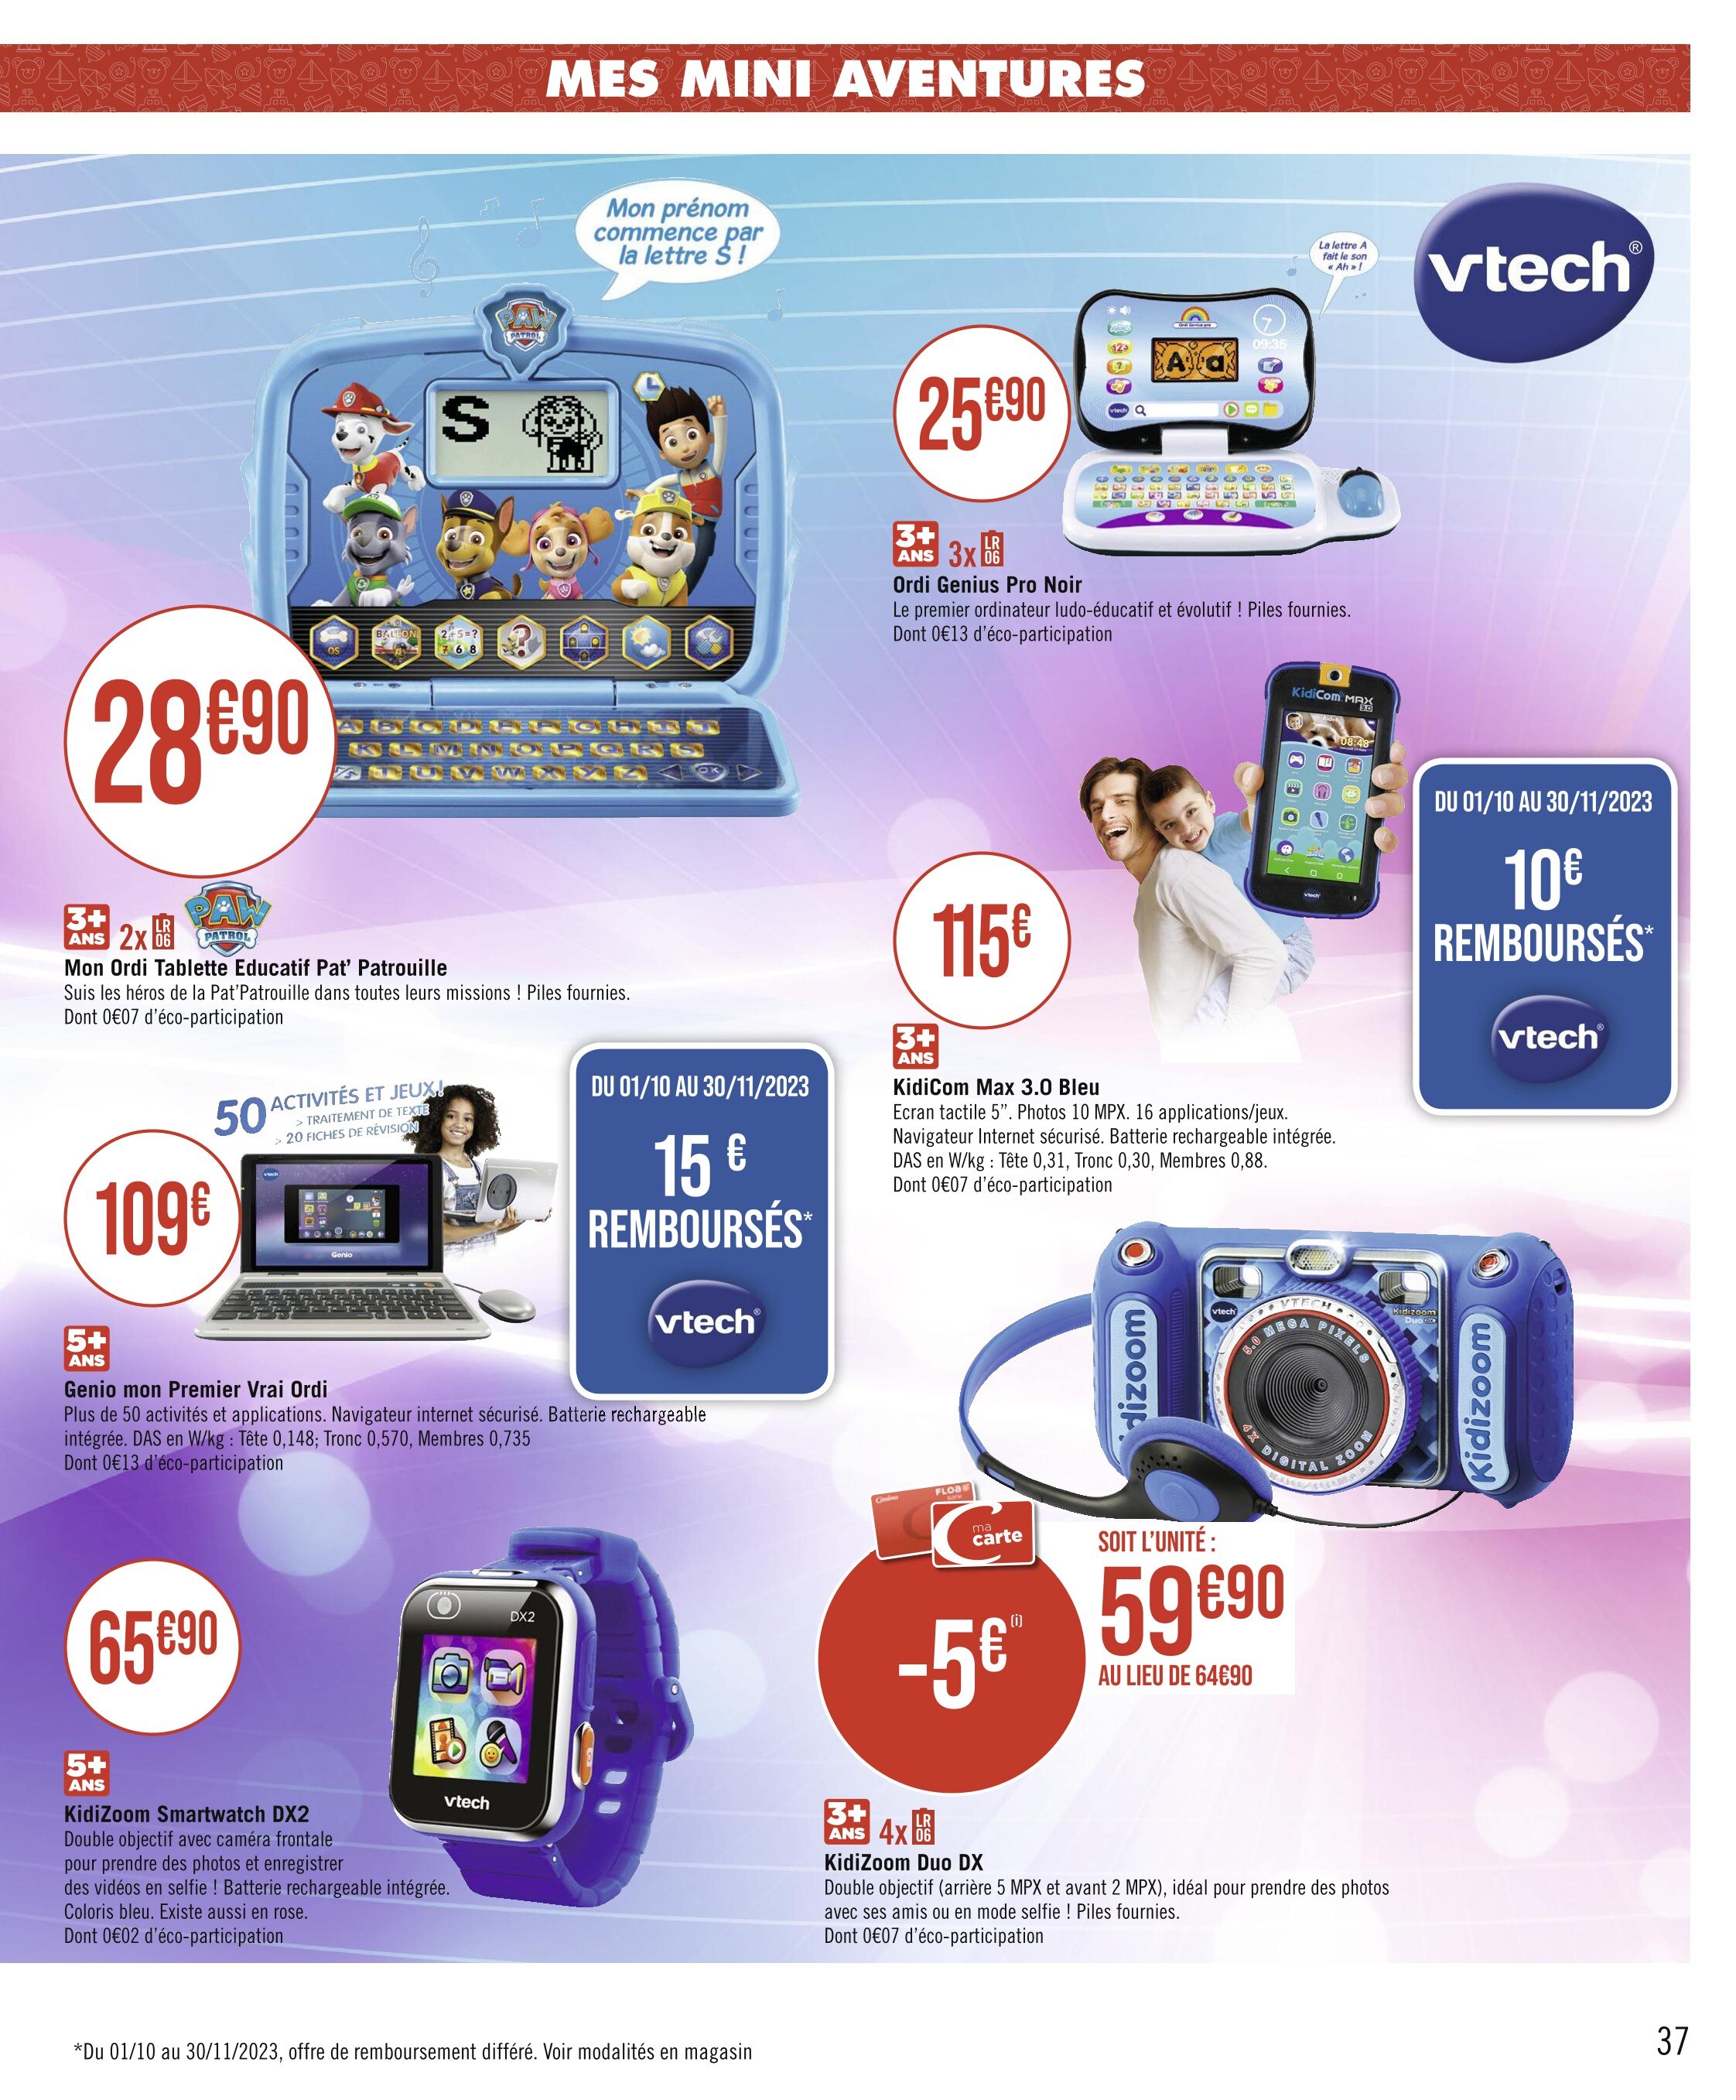 Promo Vtech kidicom max 3.0 chez Carrefour